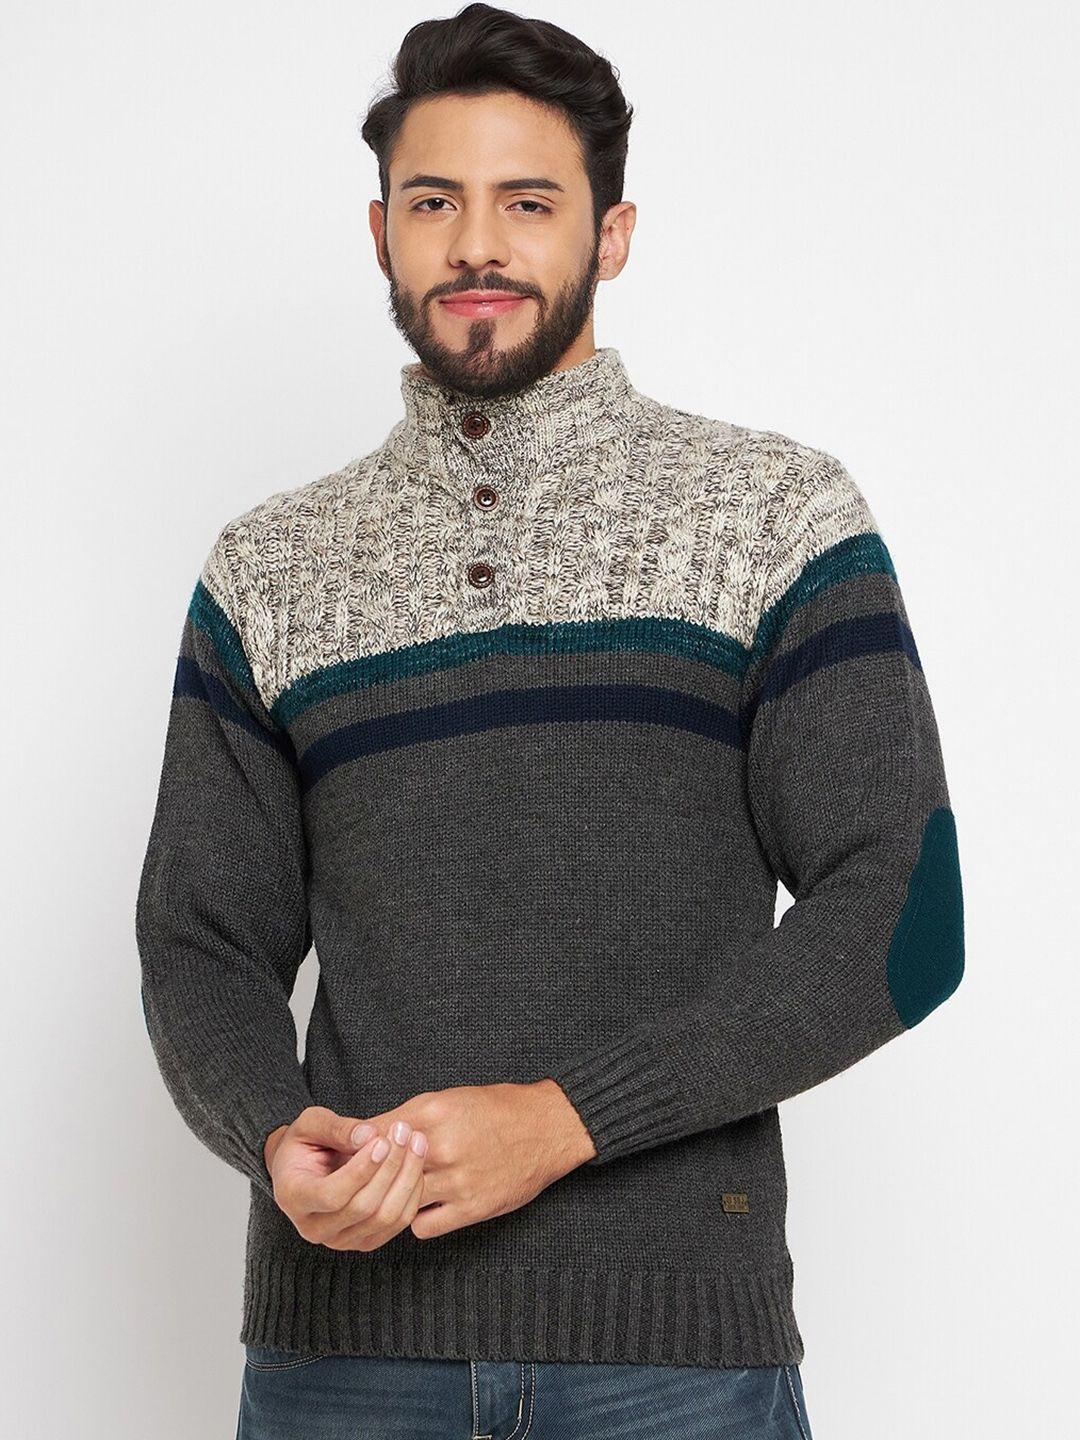 duke-colourblocked-acrylic-pullover-sweaters